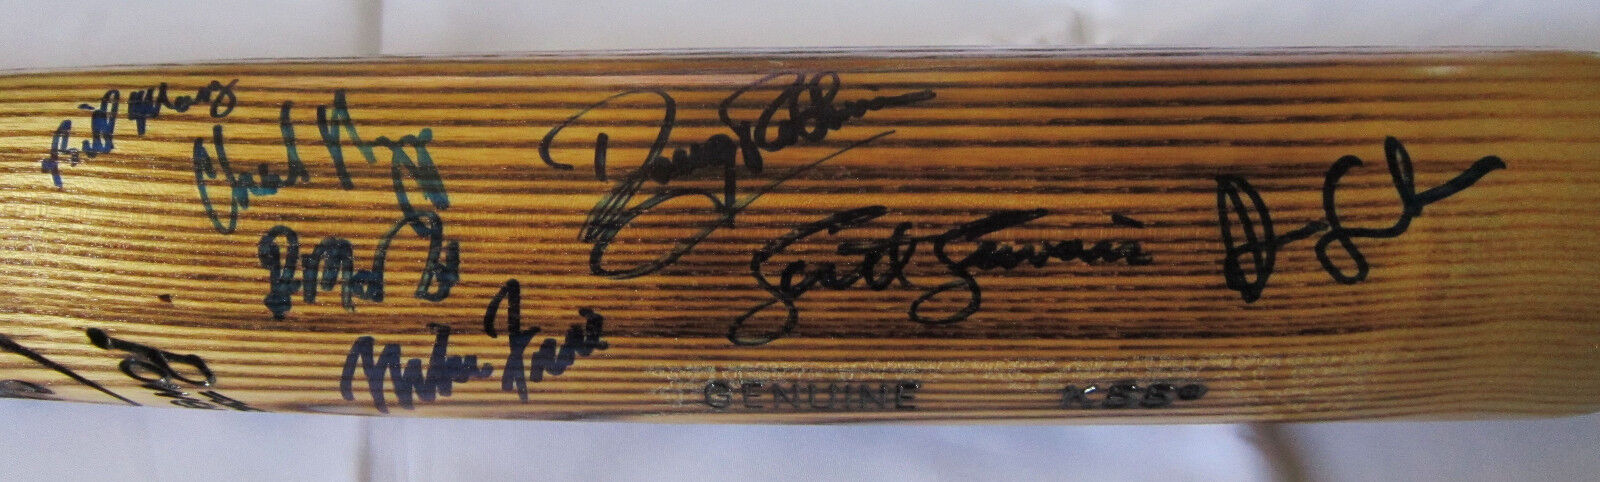 1988 United States Olympic USA Team Signed Baseball Bat- 20 signatures